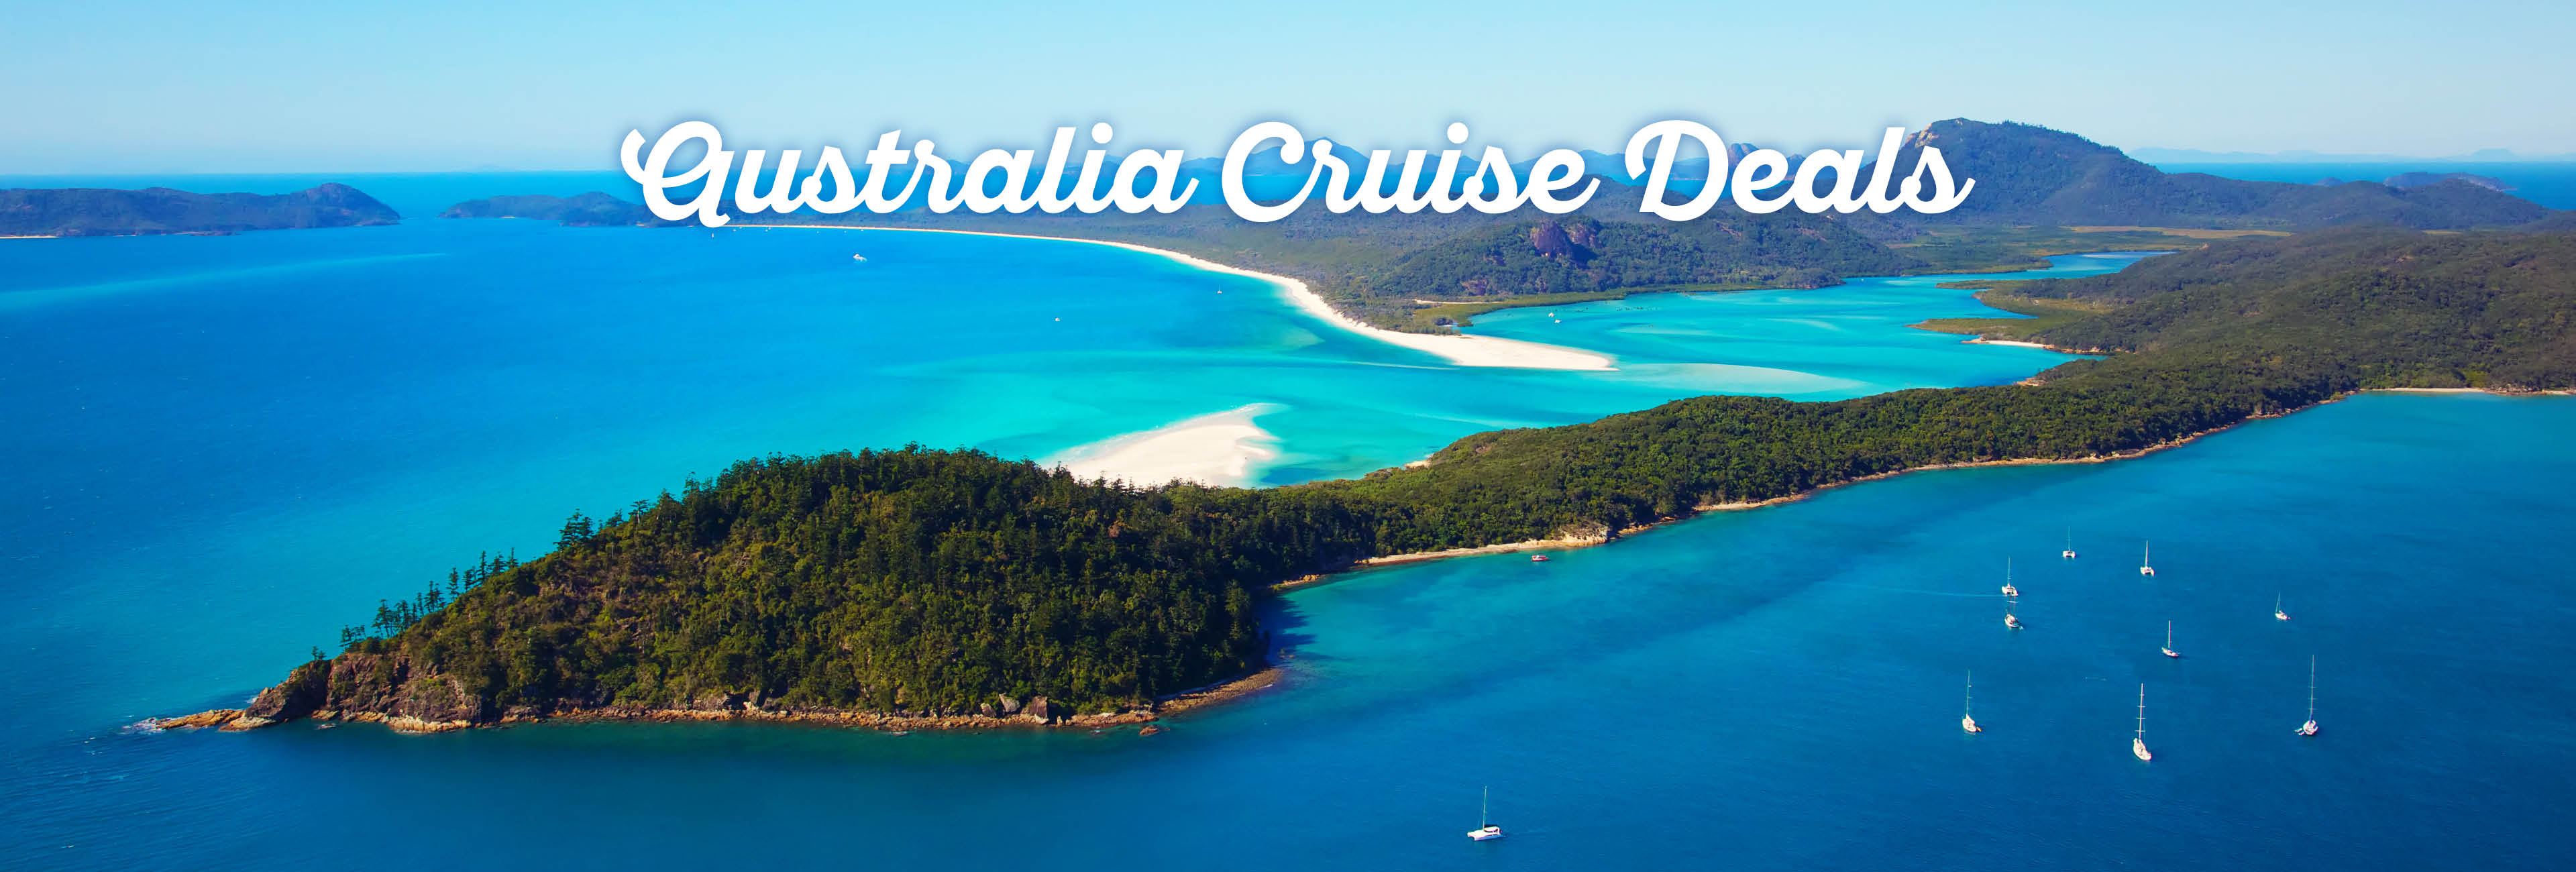 australia-cruise-deals1.jpg